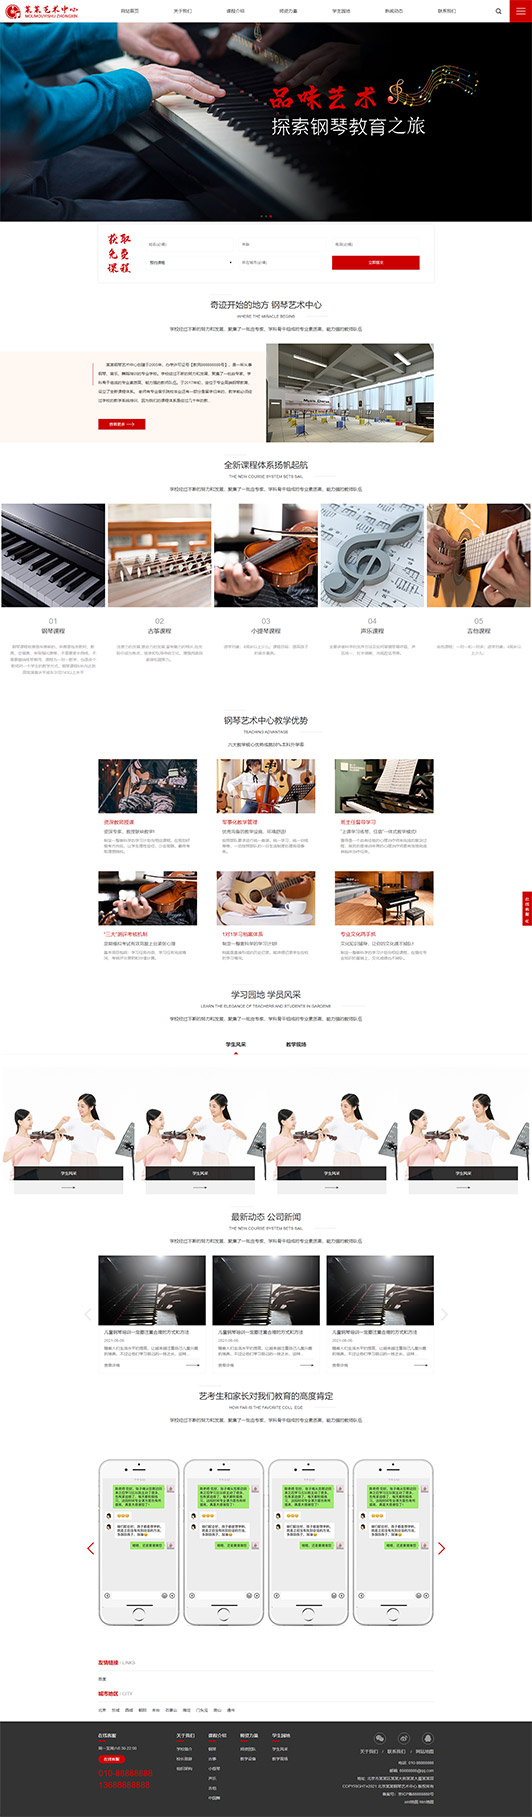 信阳钢琴艺术培训公司响应式企业网站